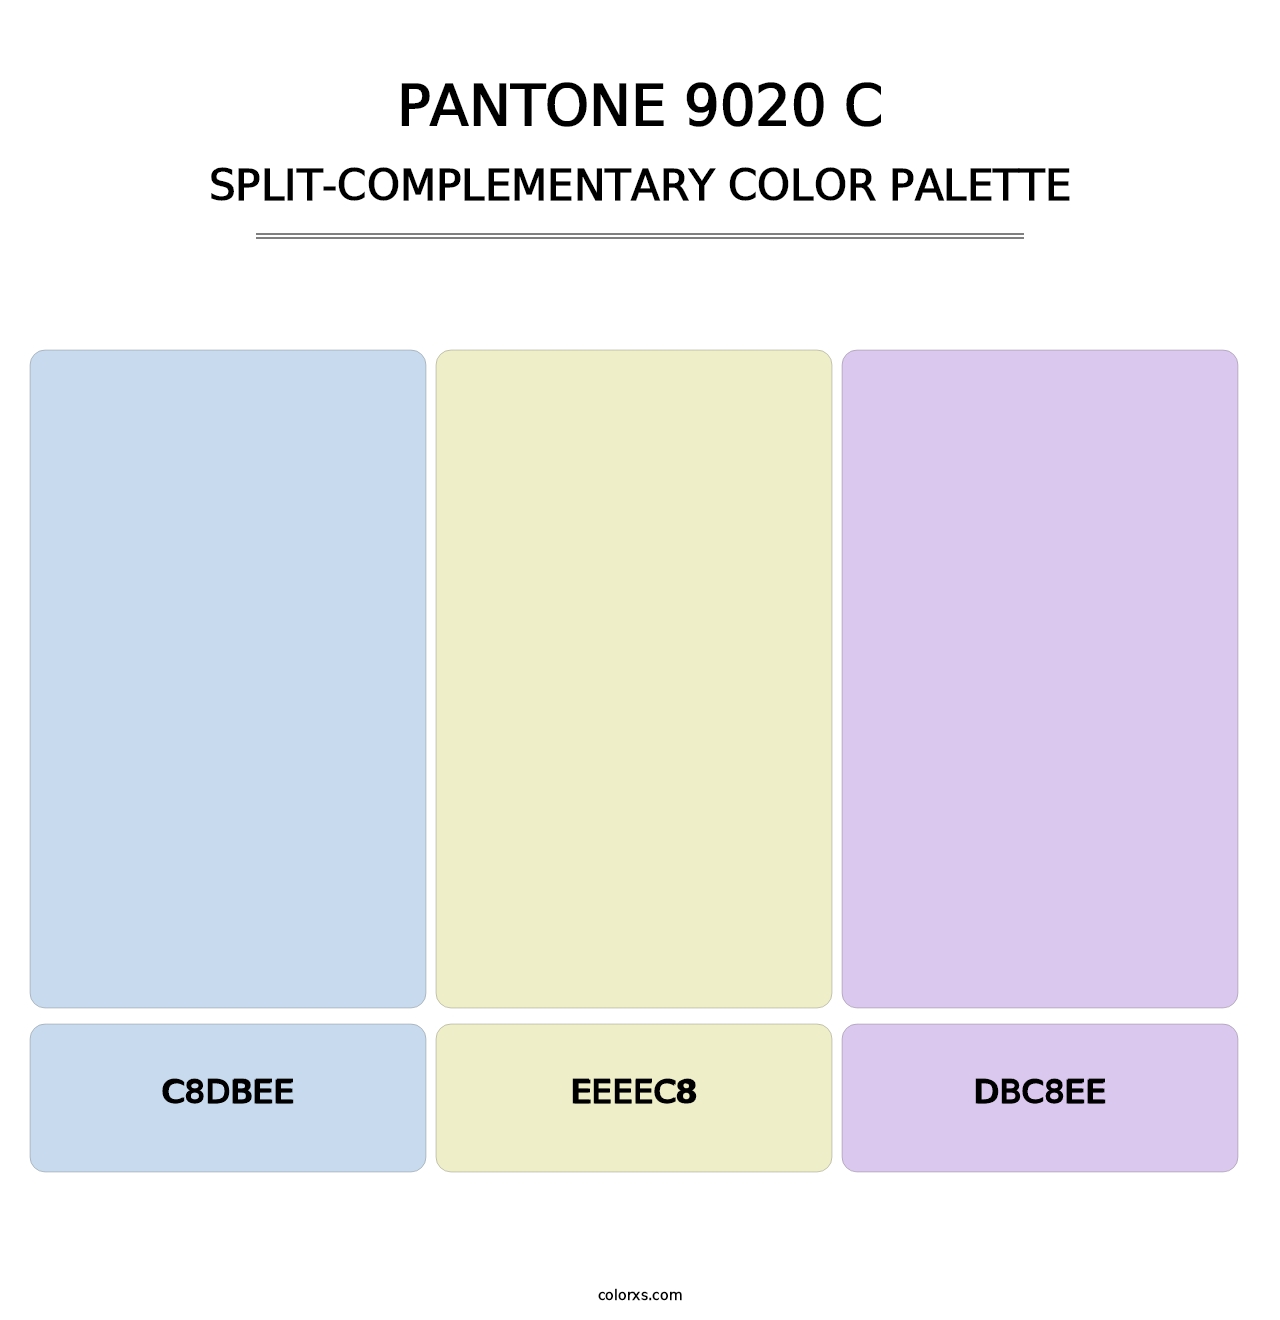 PANTONE 9020 C - Split-Complementary Color Palette